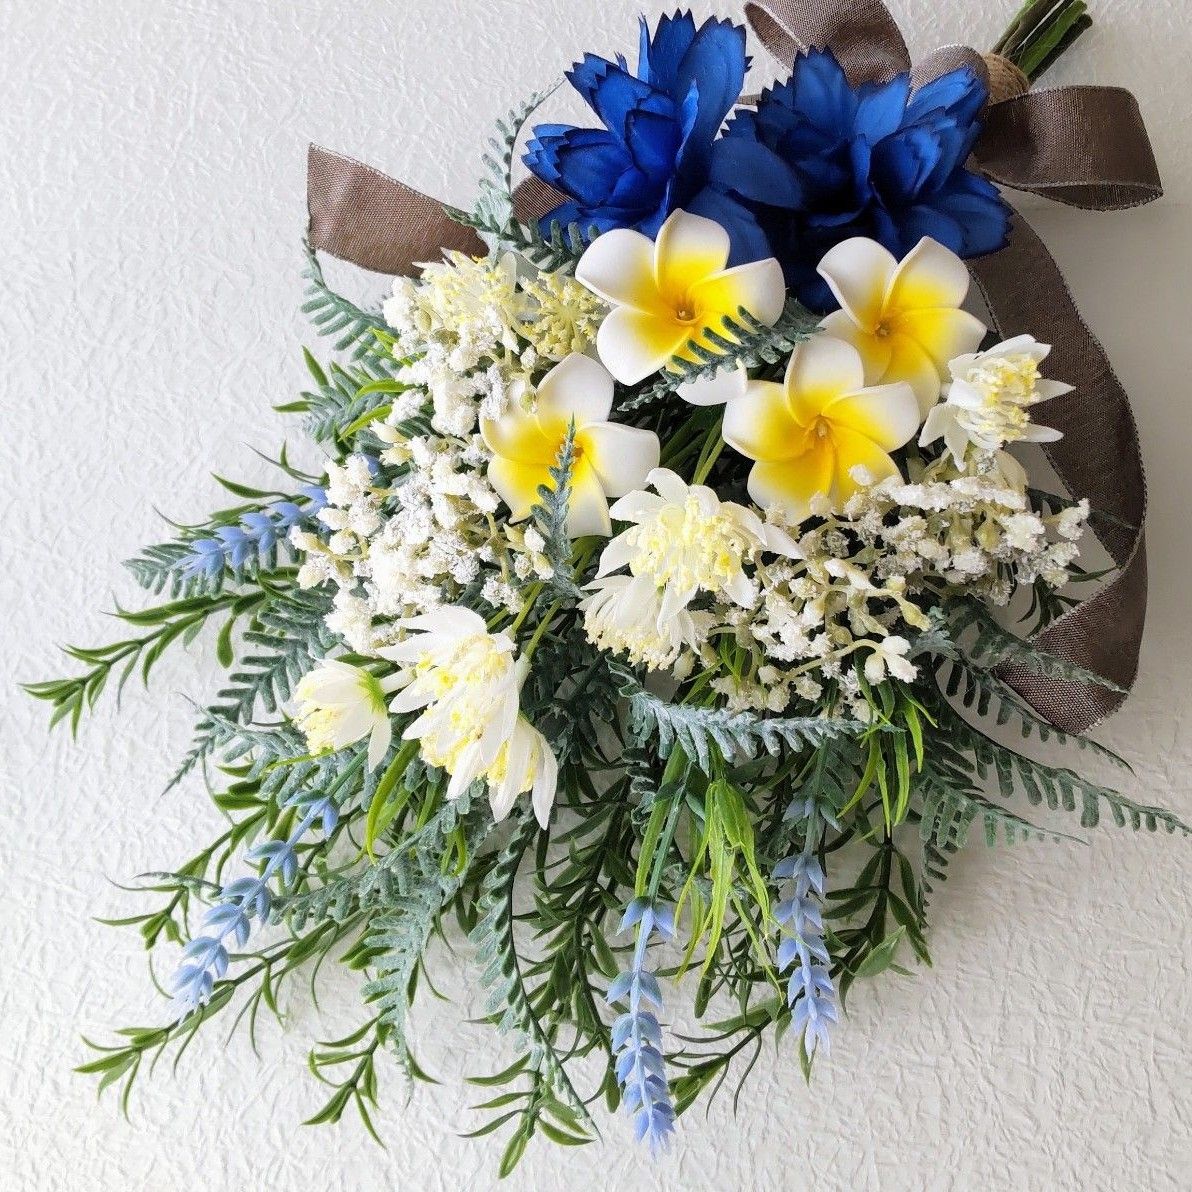 ロイヤルブルーのお花とプルメリアのスワッグ  ハンドメイド  造花  スワッグ  リース  ブルー